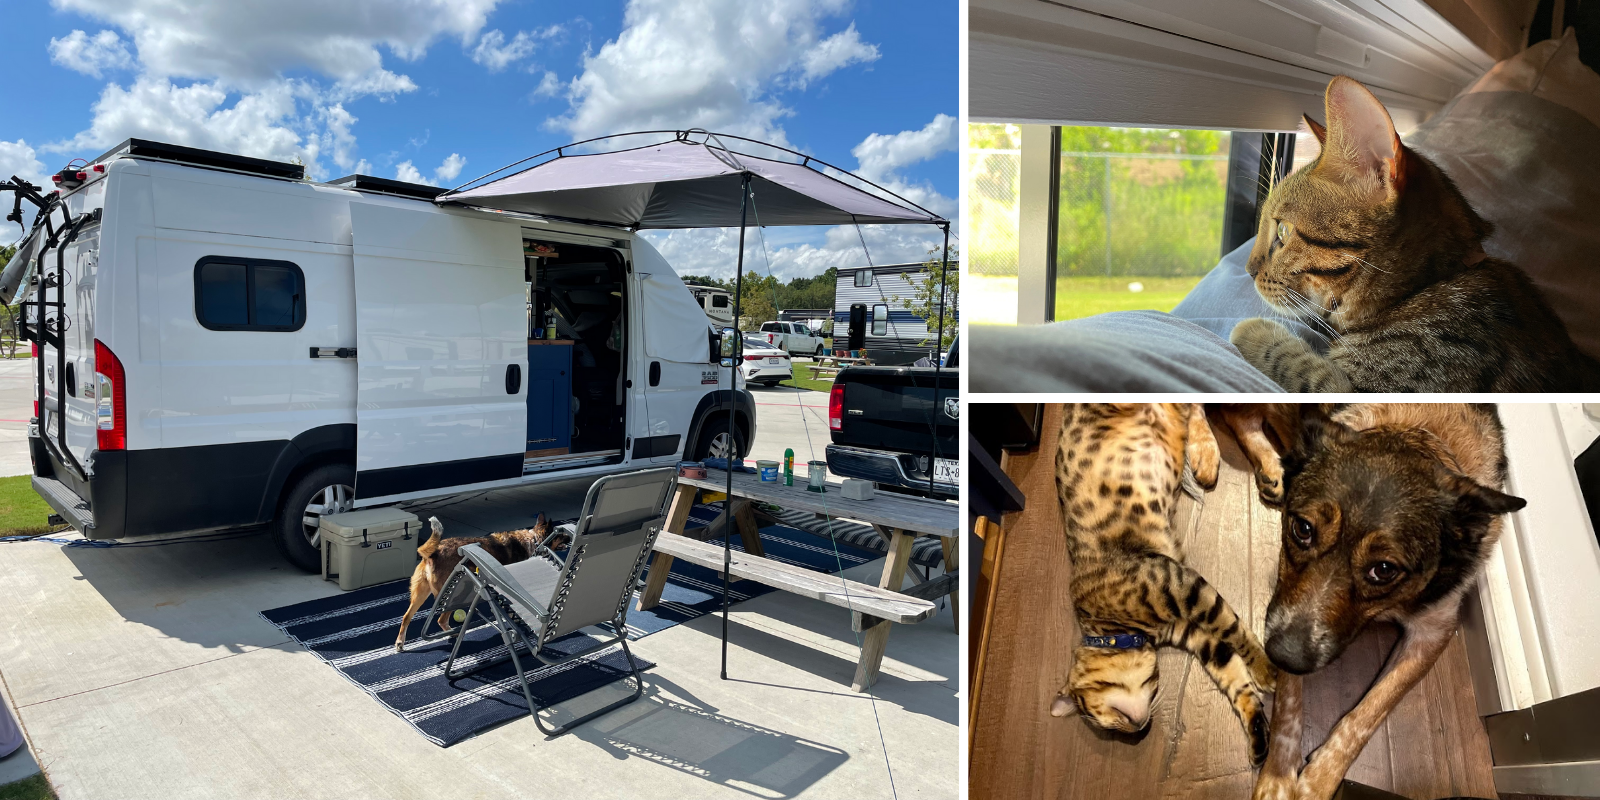 Camper Van Dreams - living life